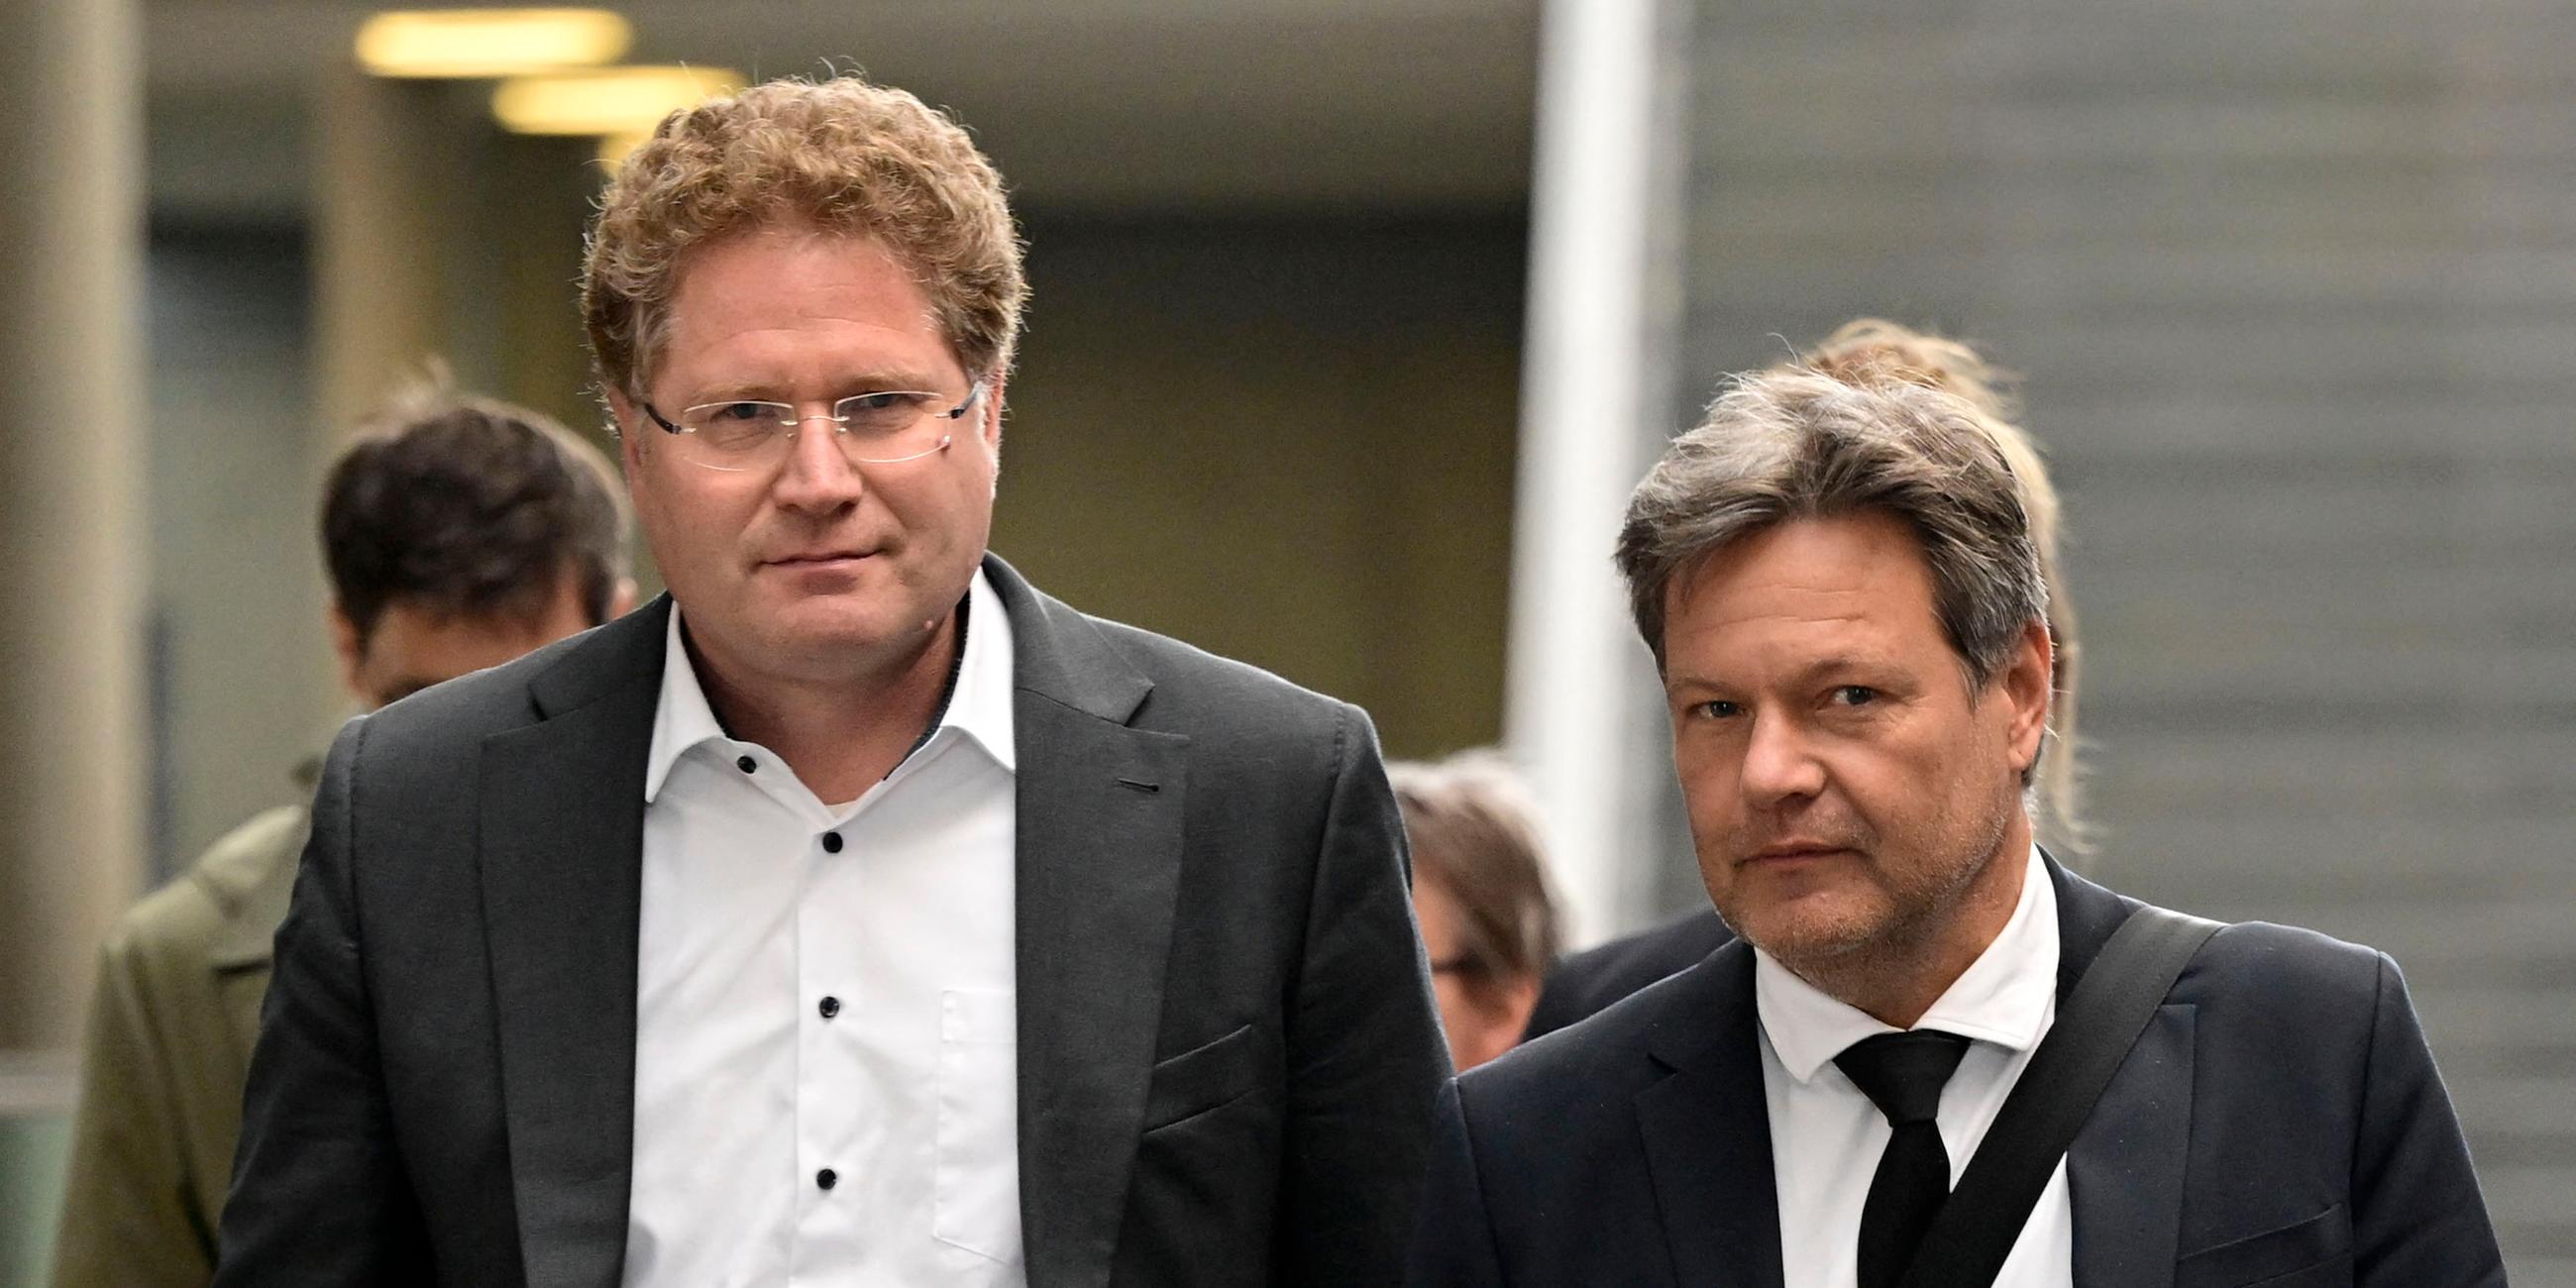 Links im Bild Staatssekretär des Wirtschaftsministeriums, Patrick Graichen, rechts im Bild Wirtschaftsminister Robert Habeck.